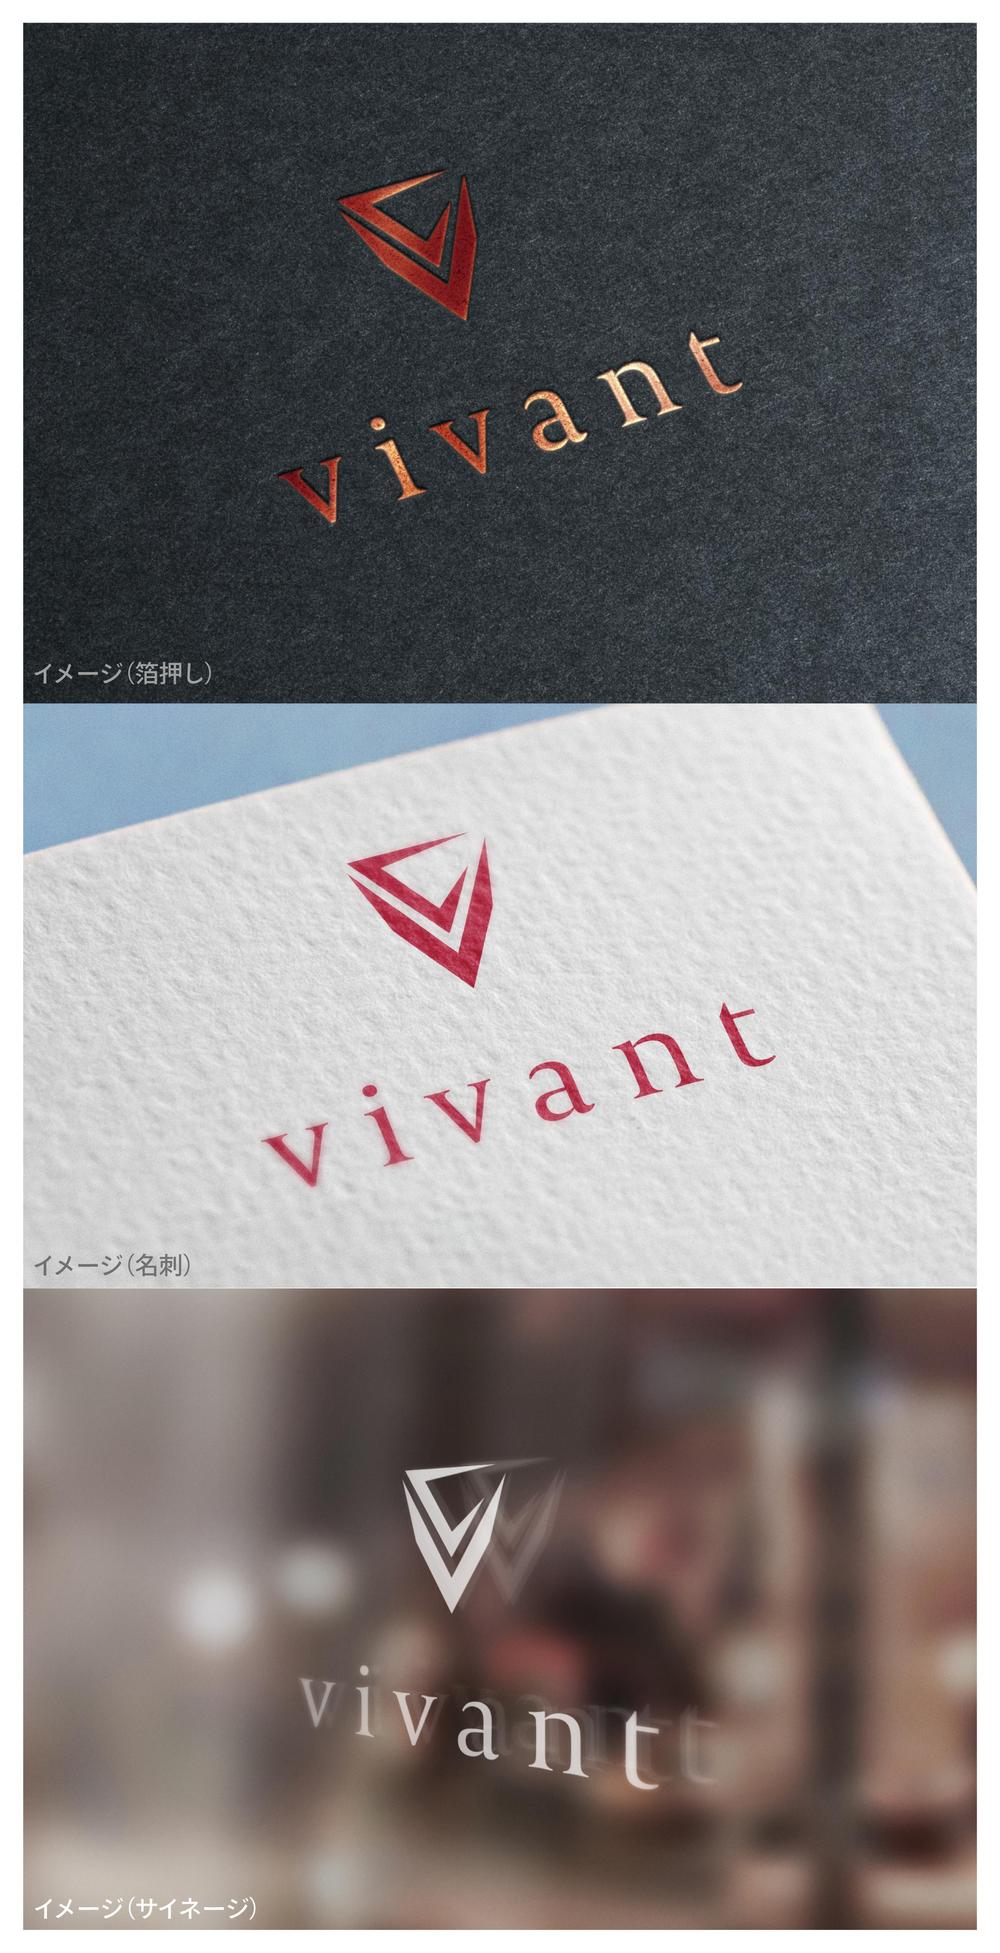 vivant_logo02_01.jpg